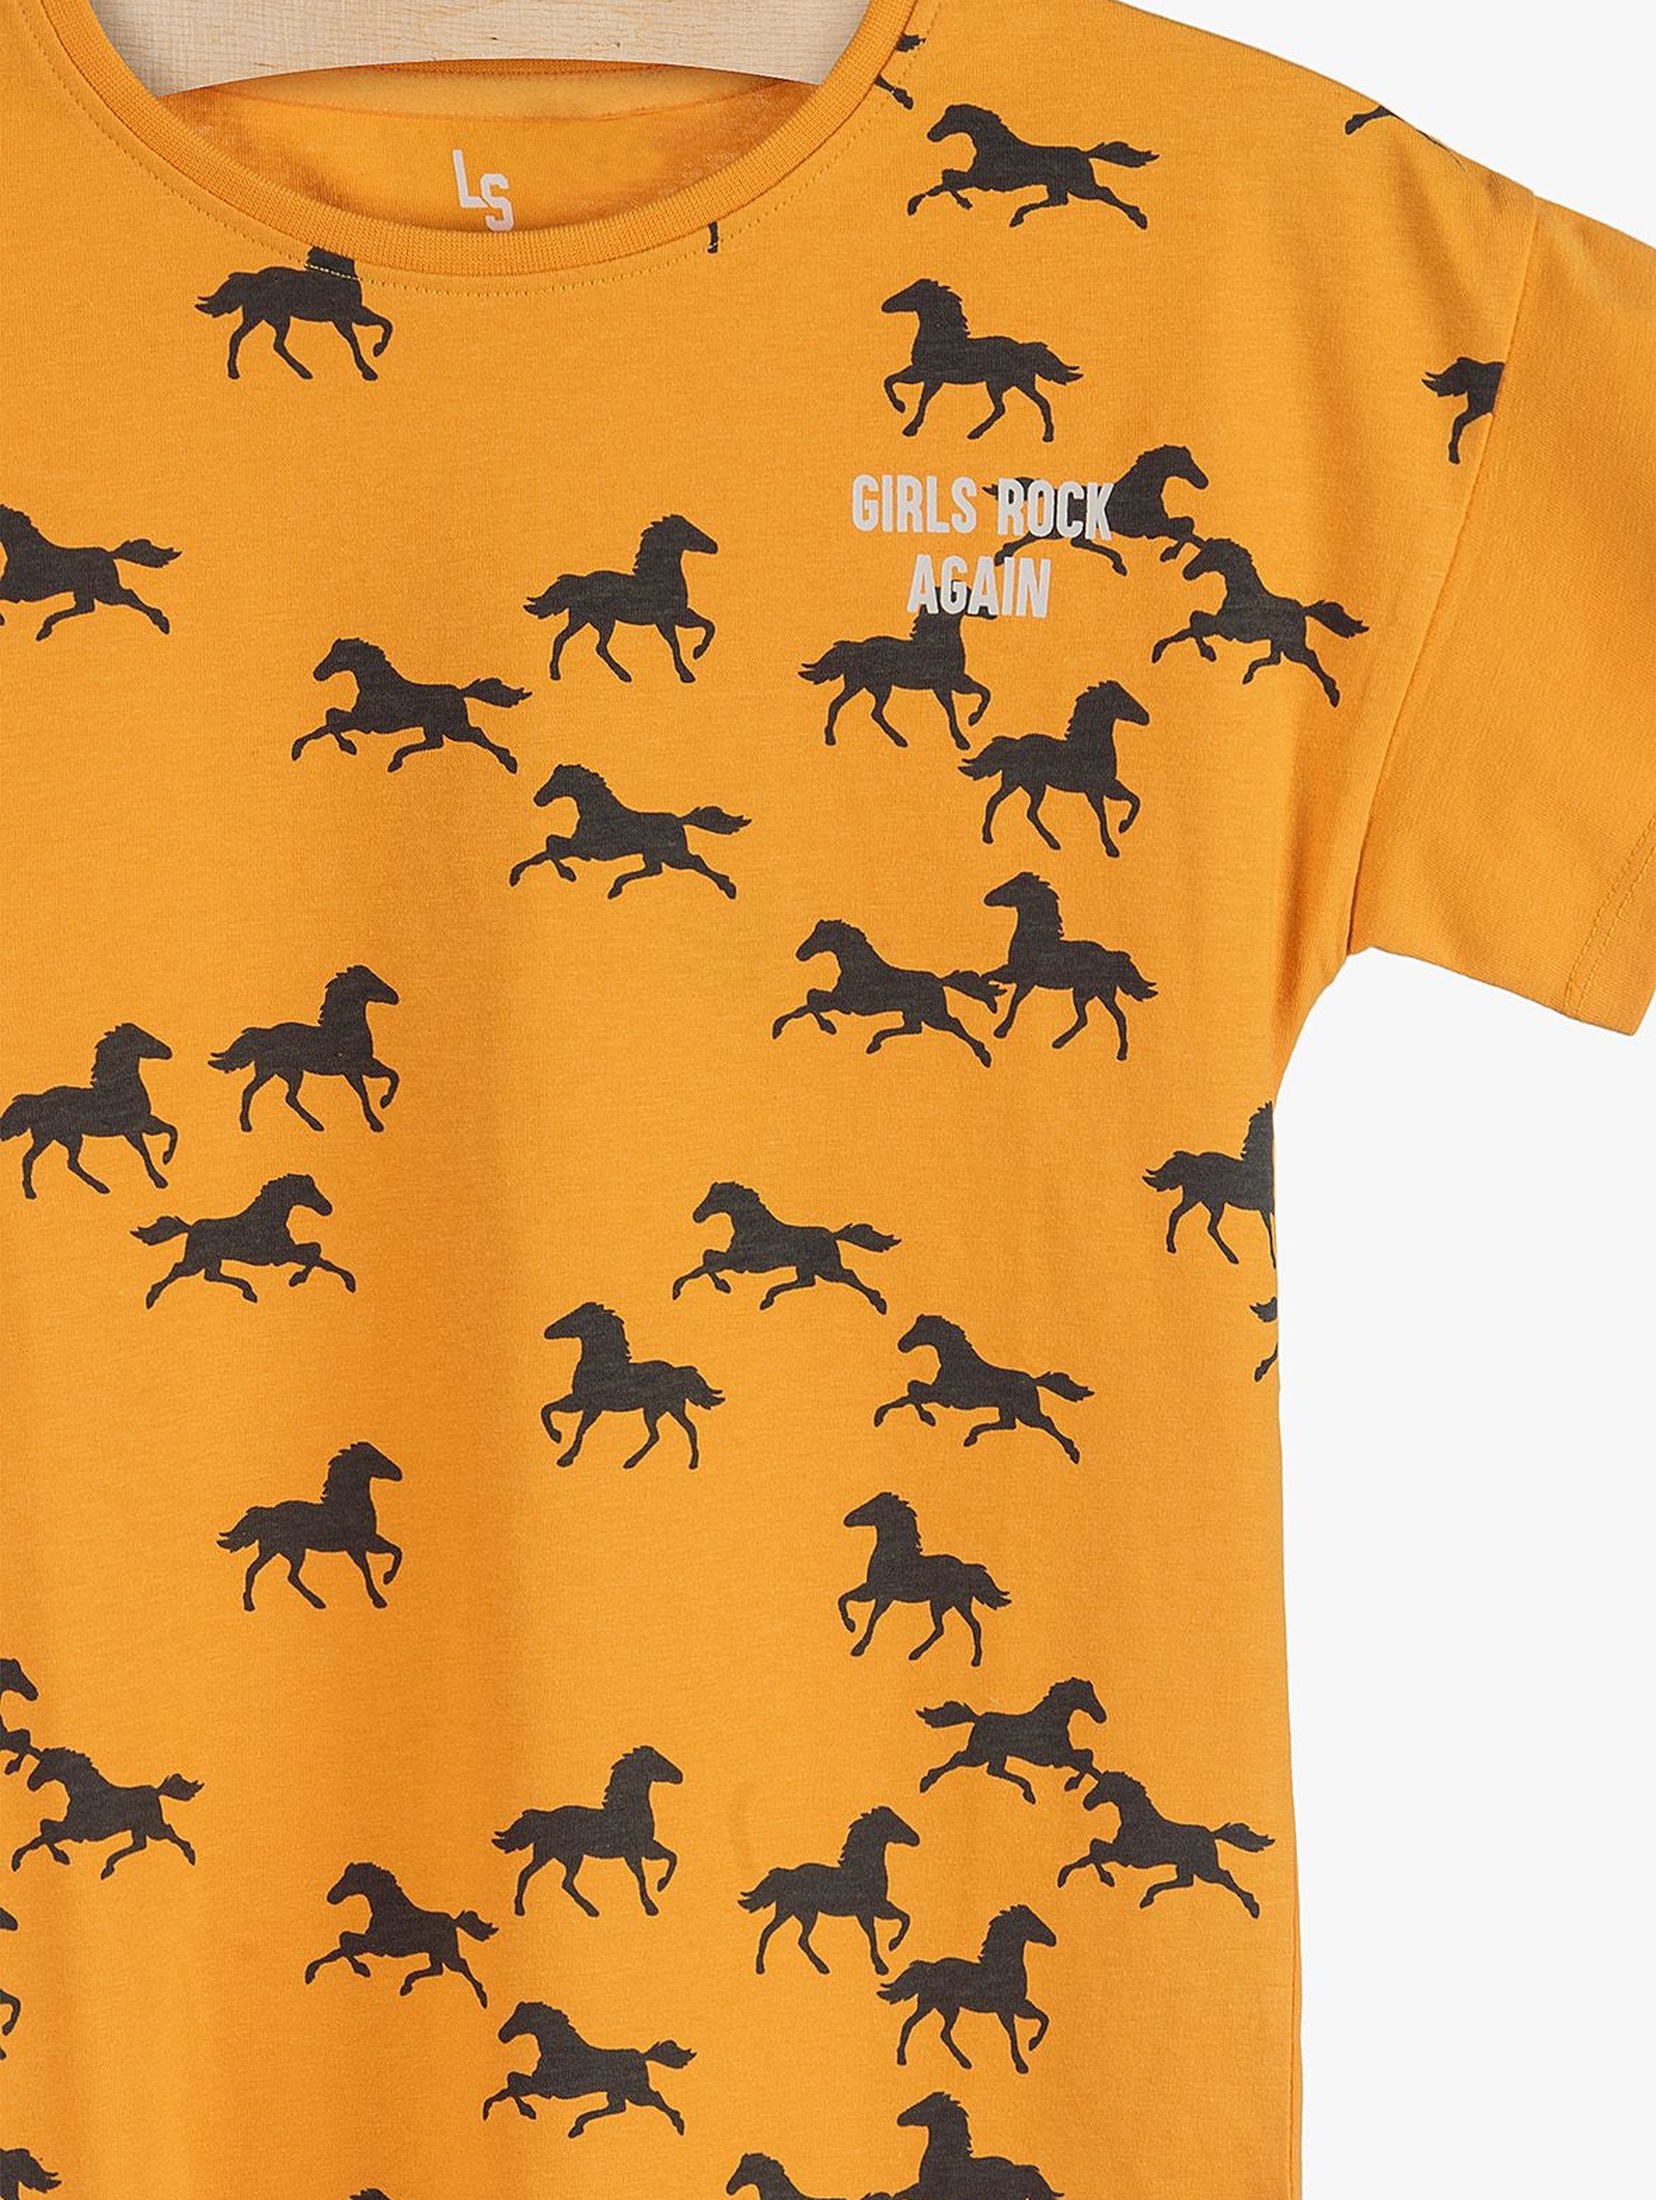 T-shirt dziewczęcy z frędzlami- żółty w konie